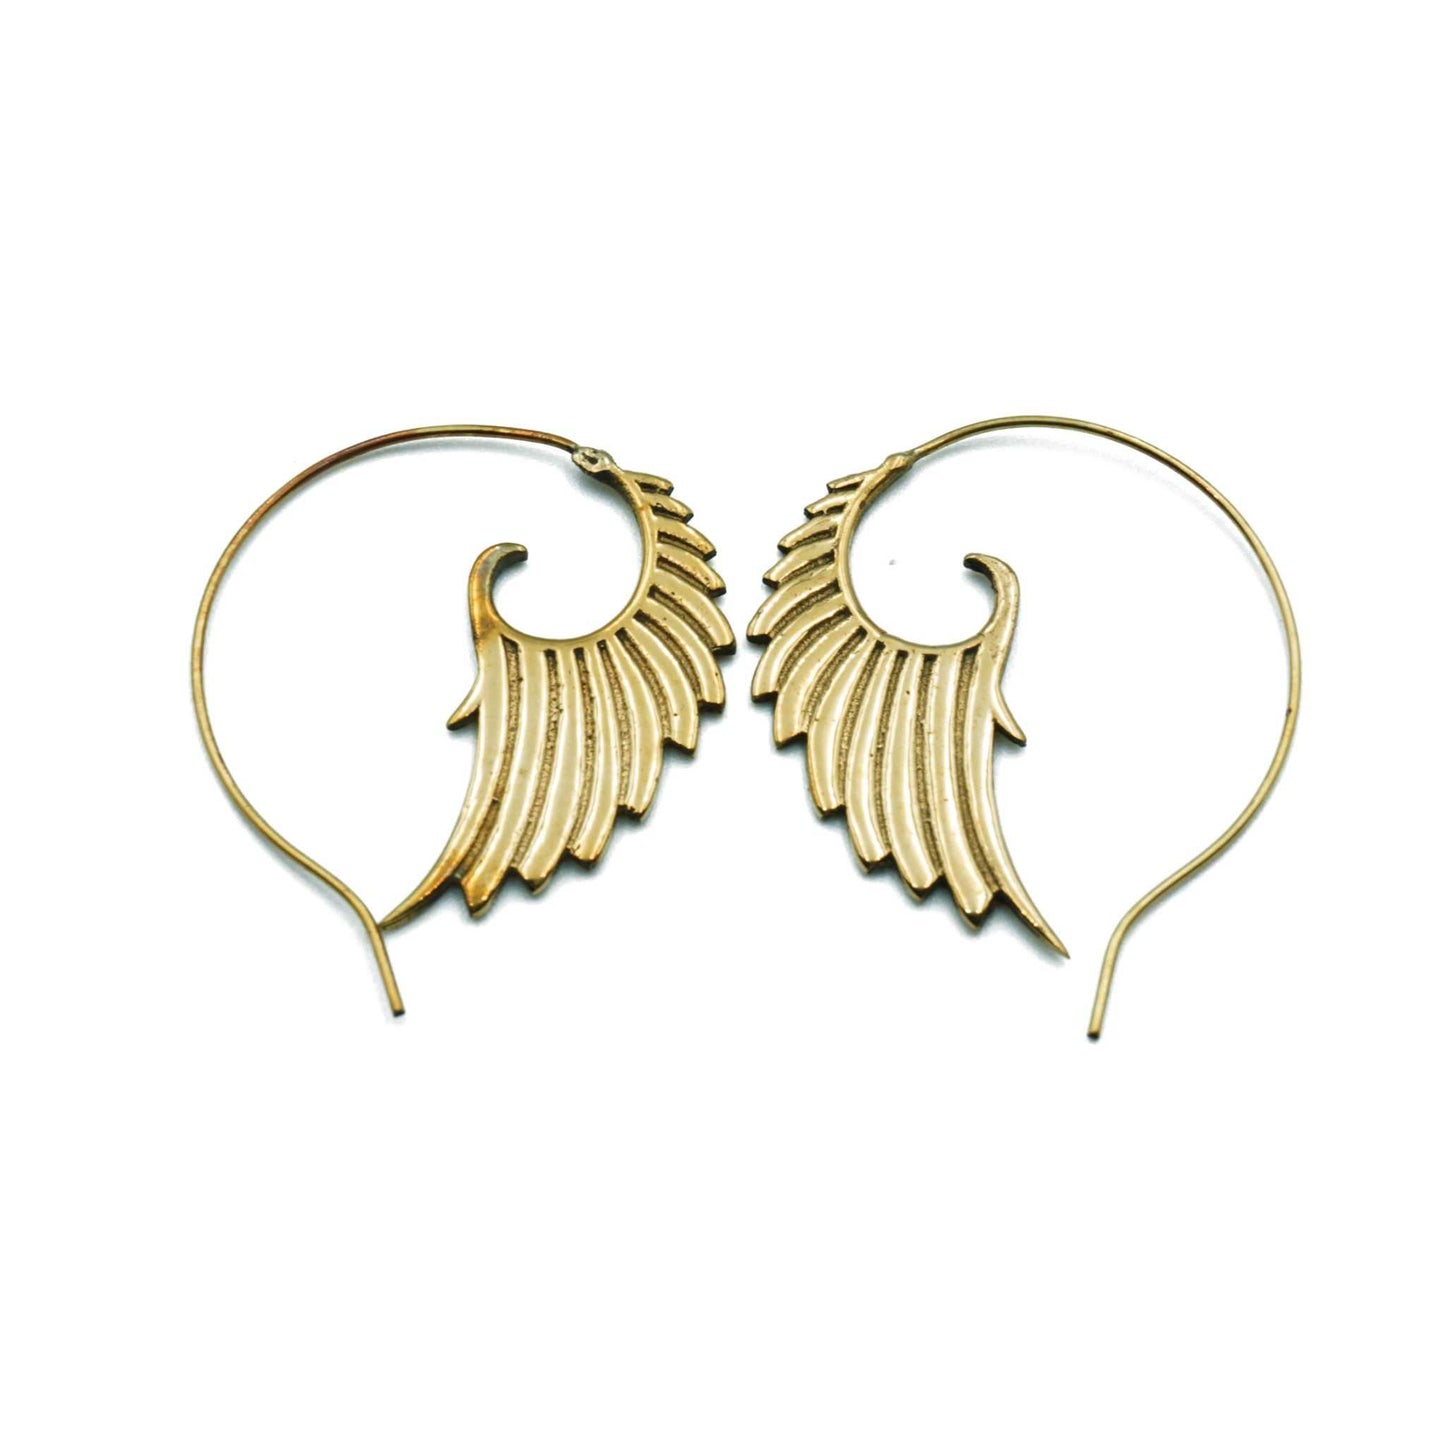 Diva āgneya दिव - earrings